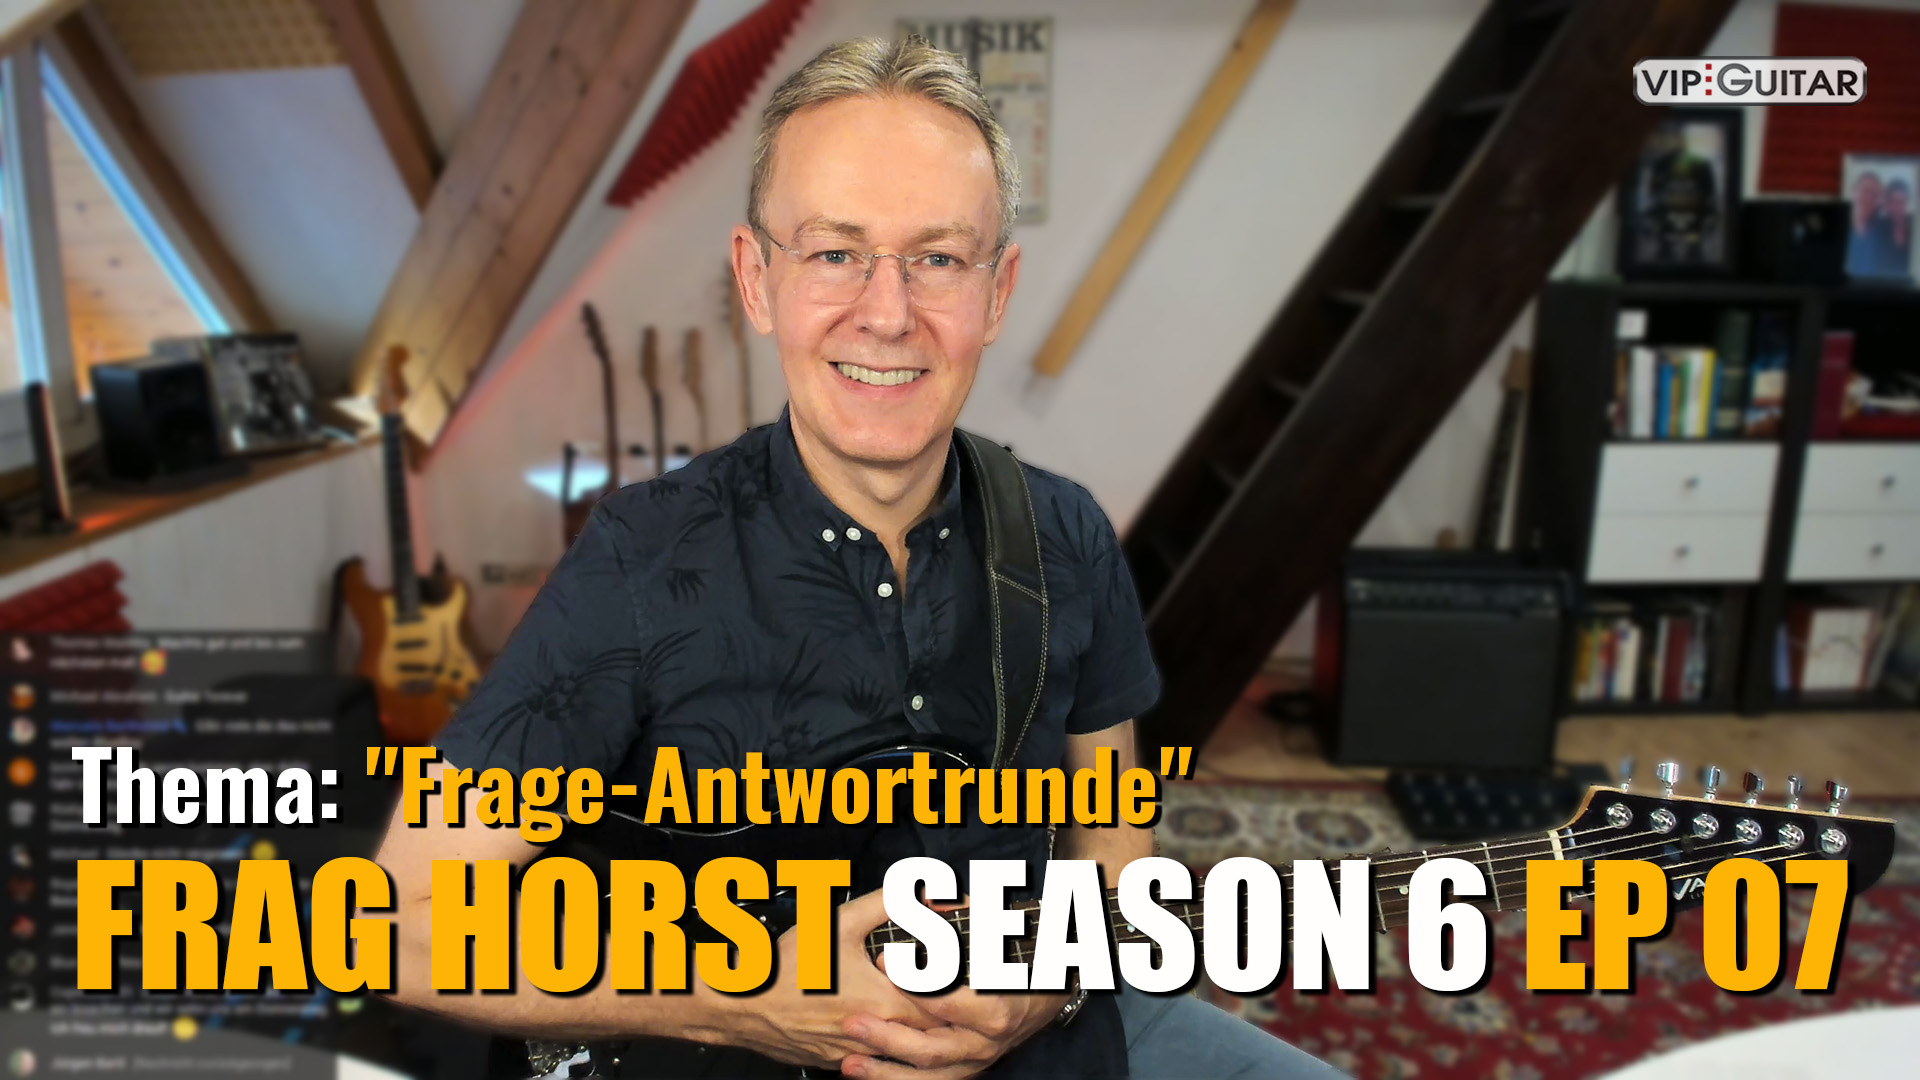 Frag Horst - Season 6 - Episode 07